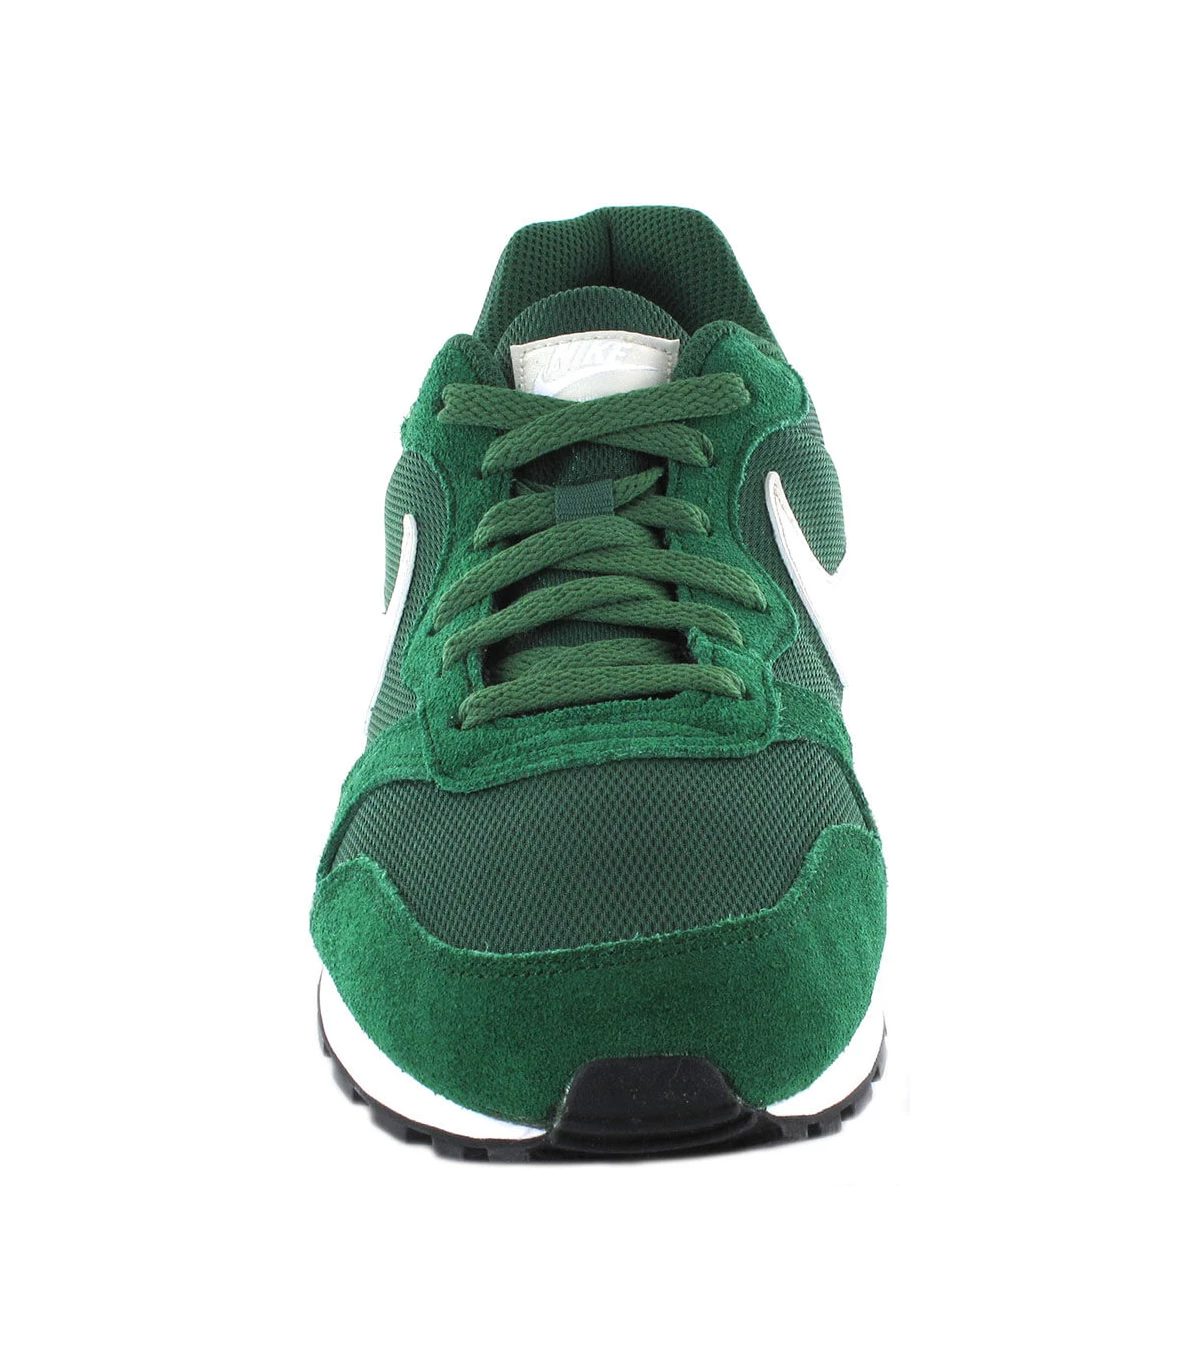 perdonado ir de compras hecho ➤Nike MD Runner 2 Verde - ➤ Zapatillas Lifestyle l SoloRunning.com